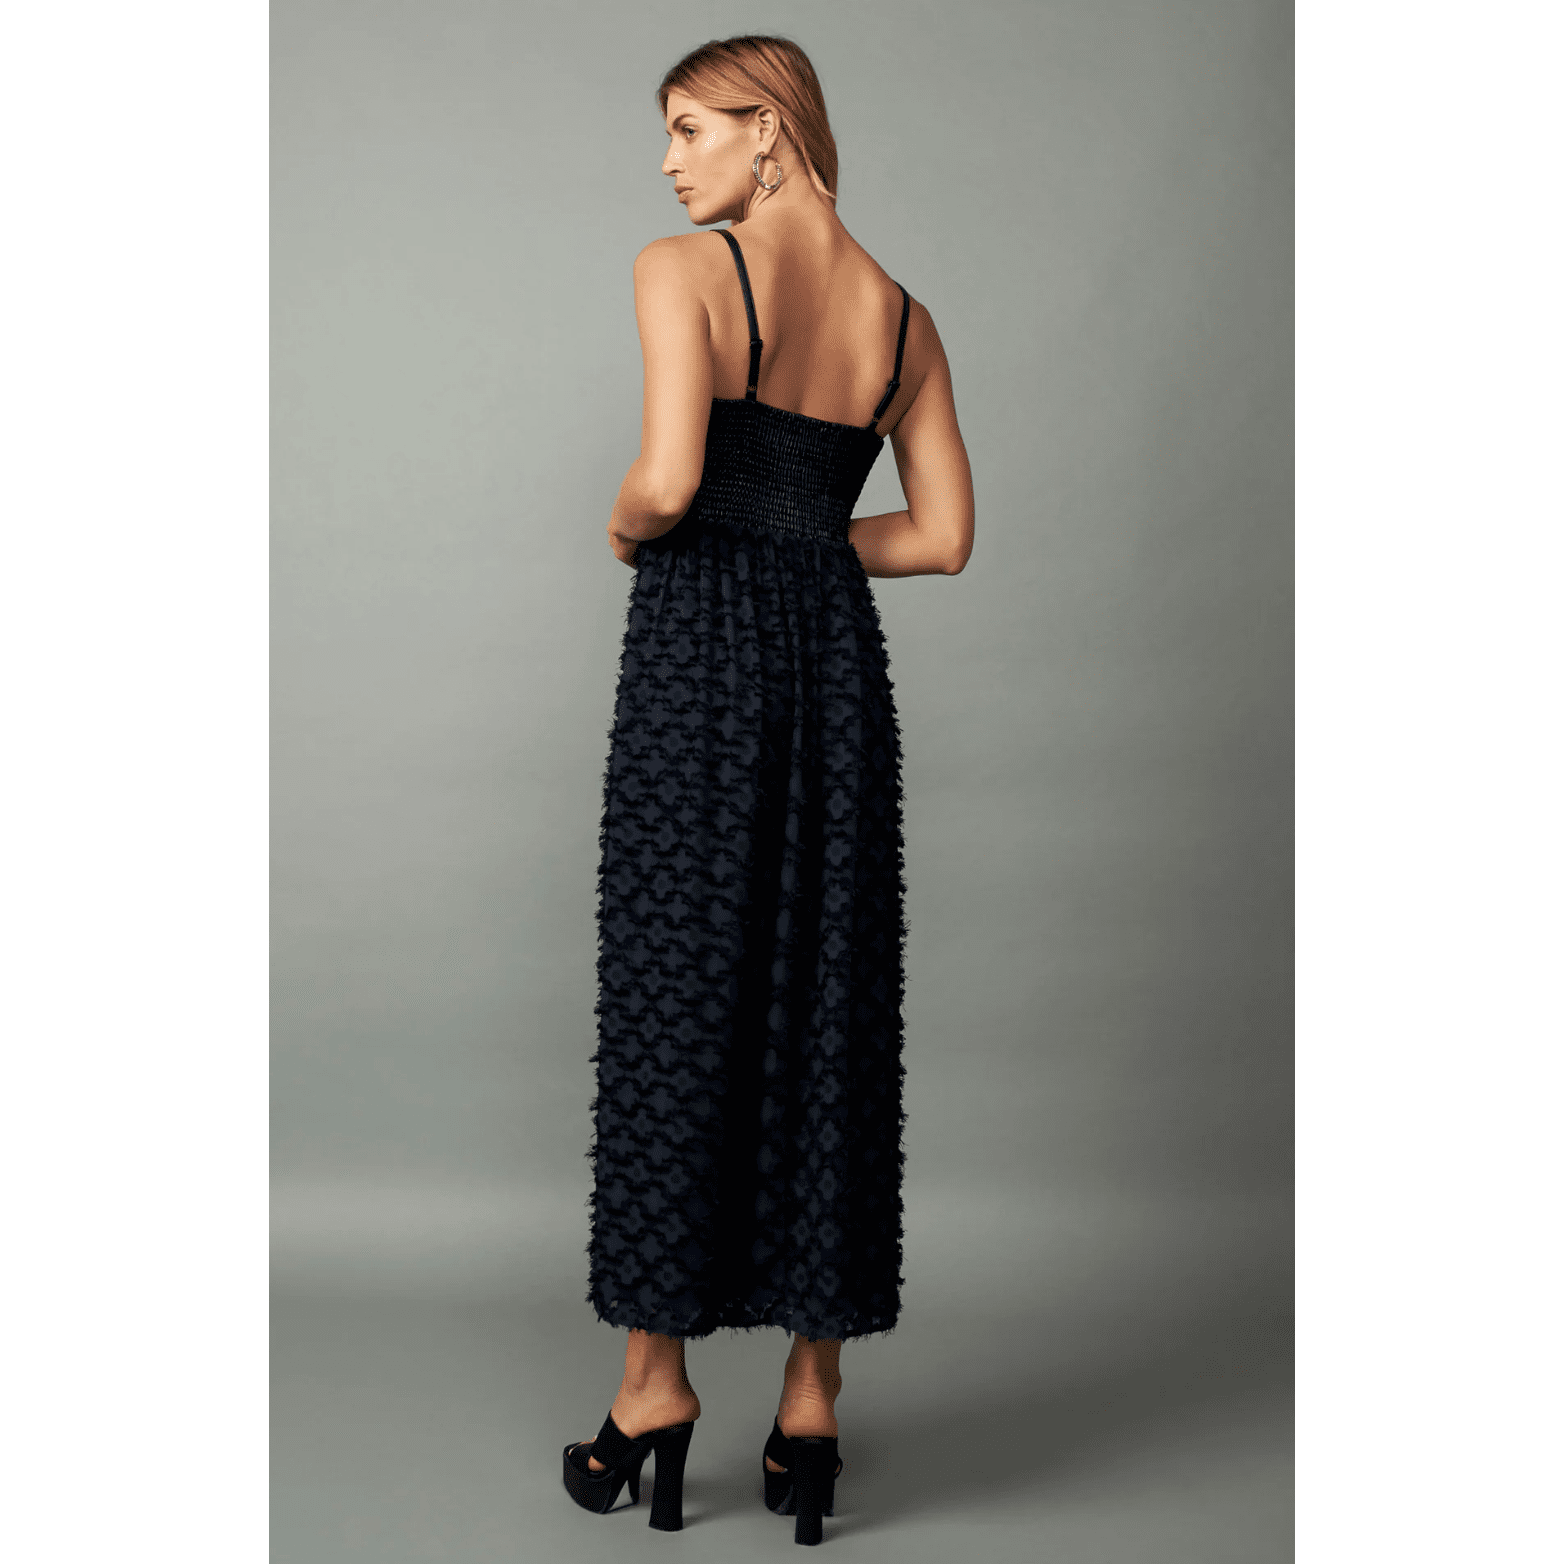 Current Air Women's Textured Sleeveless Maxi Dress Midnight Navy - Jaunts Boutique 